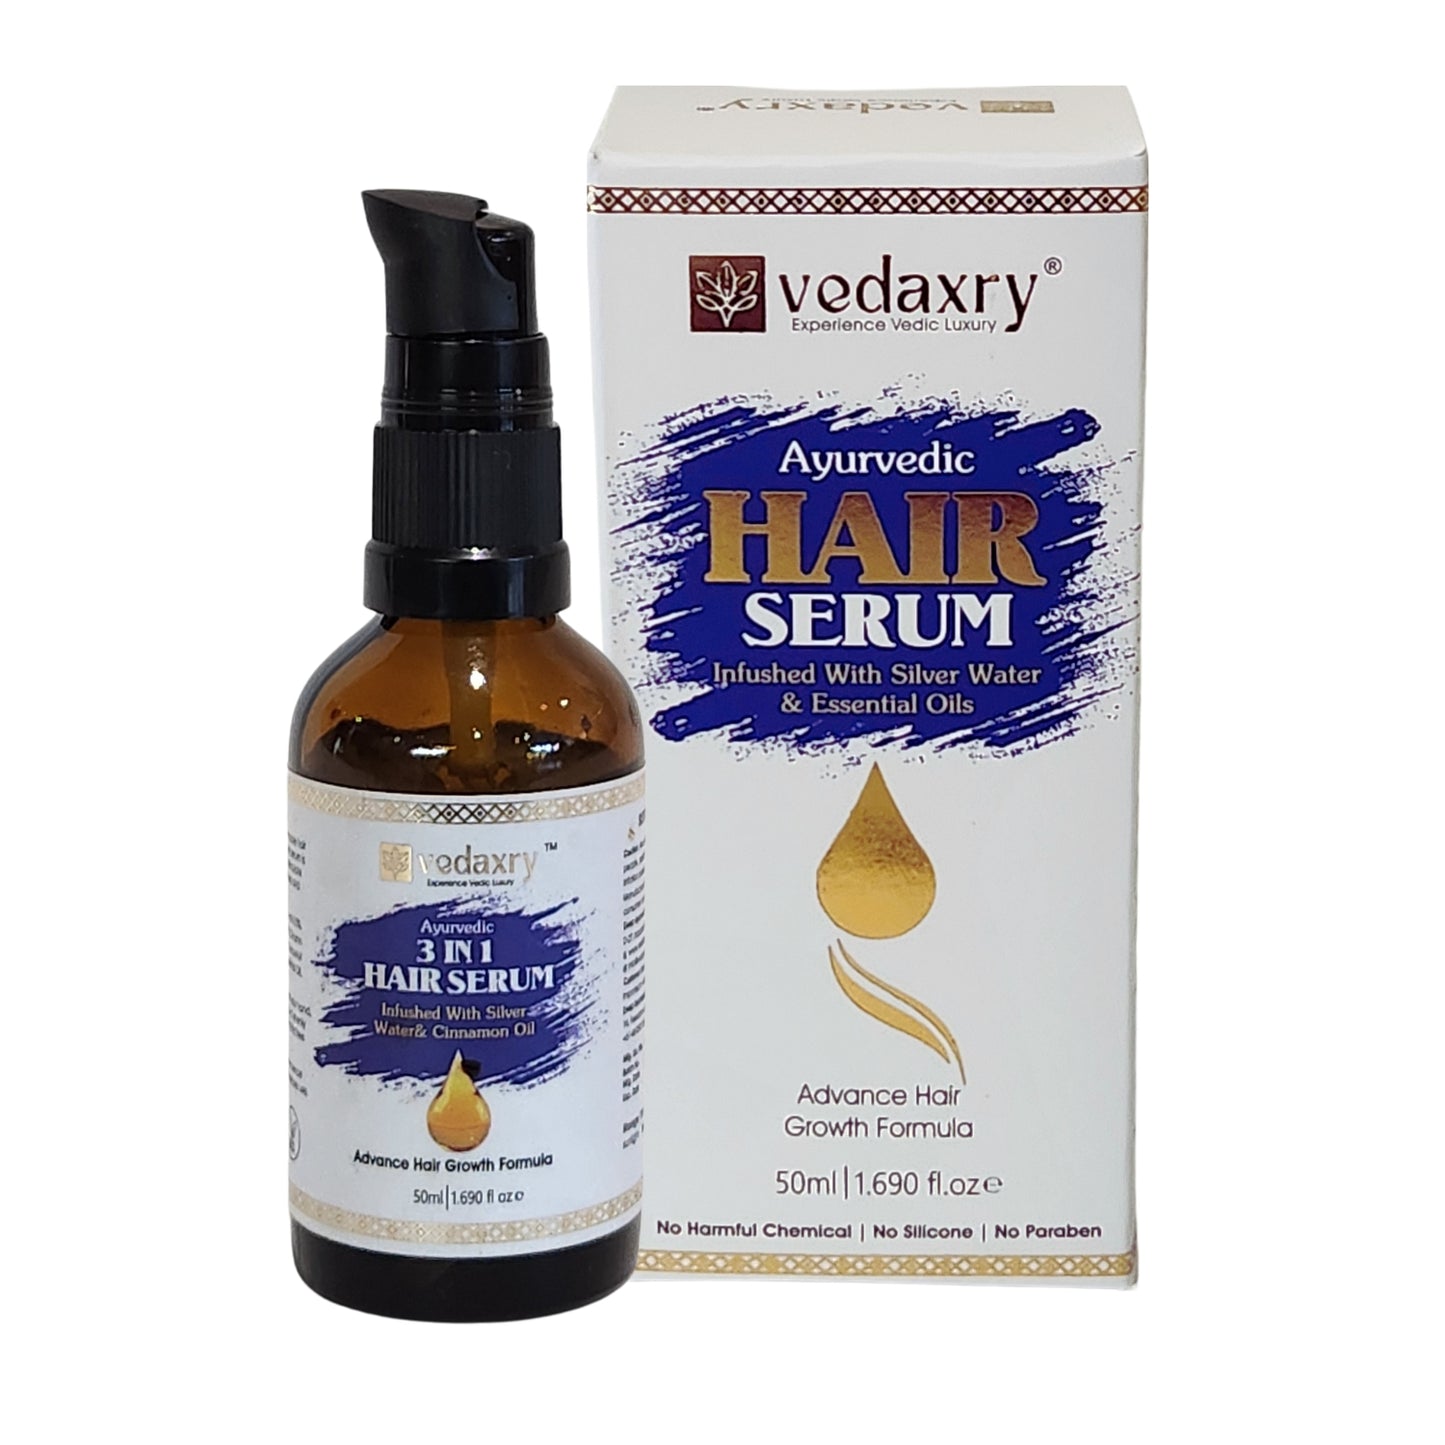 Vedaxry Ayurevdic Hair Serum benefits